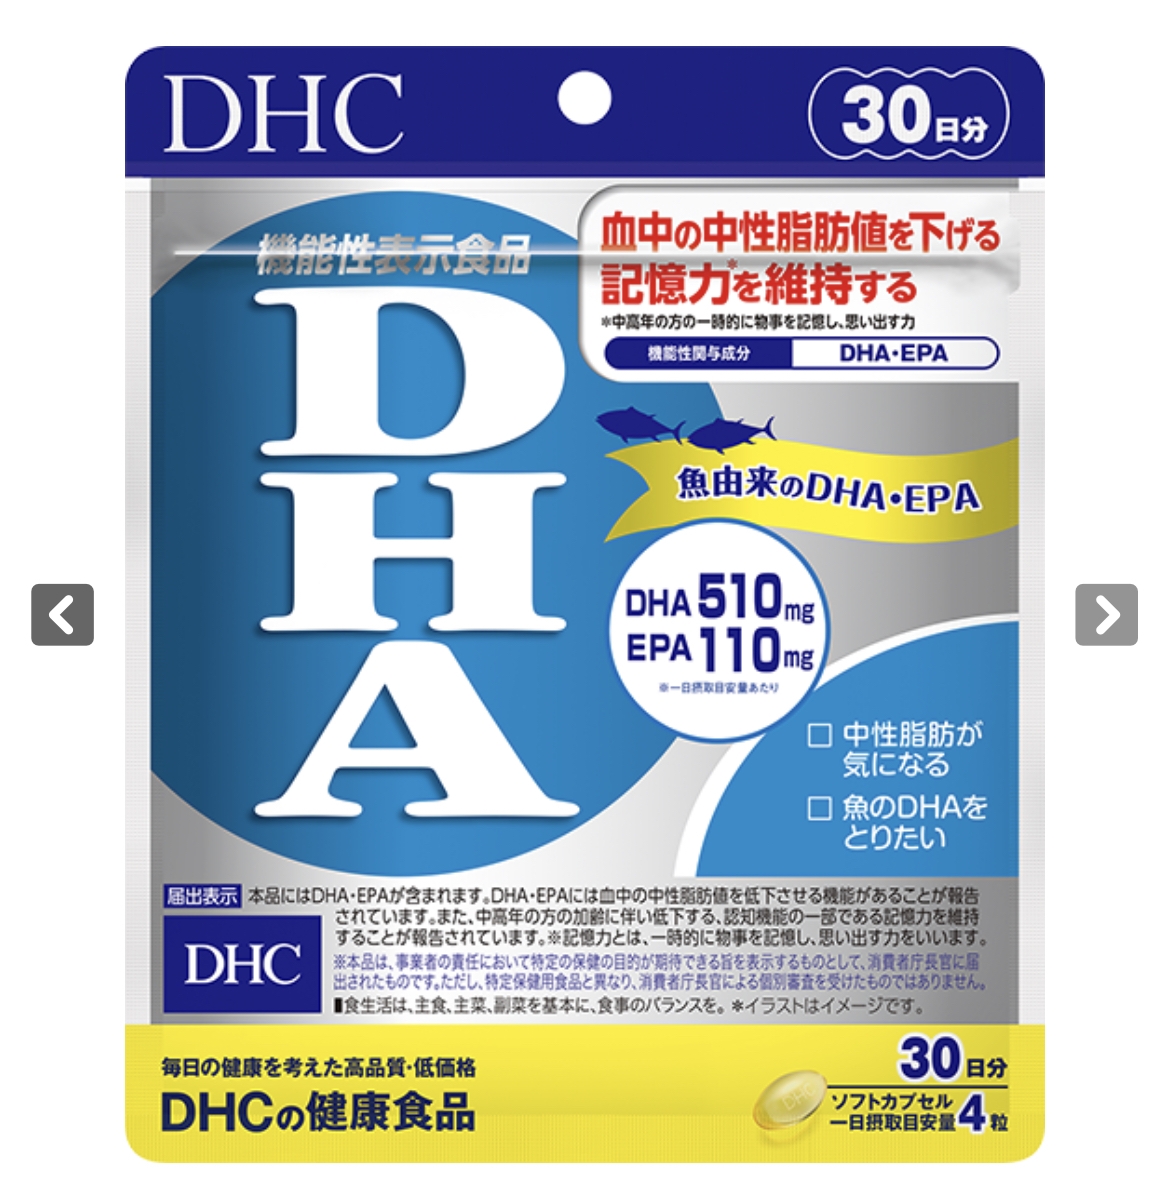 DHC(ディーエイチシー) DHAの良い点・メリットに関するmeg22882288さんの口コミ画像1